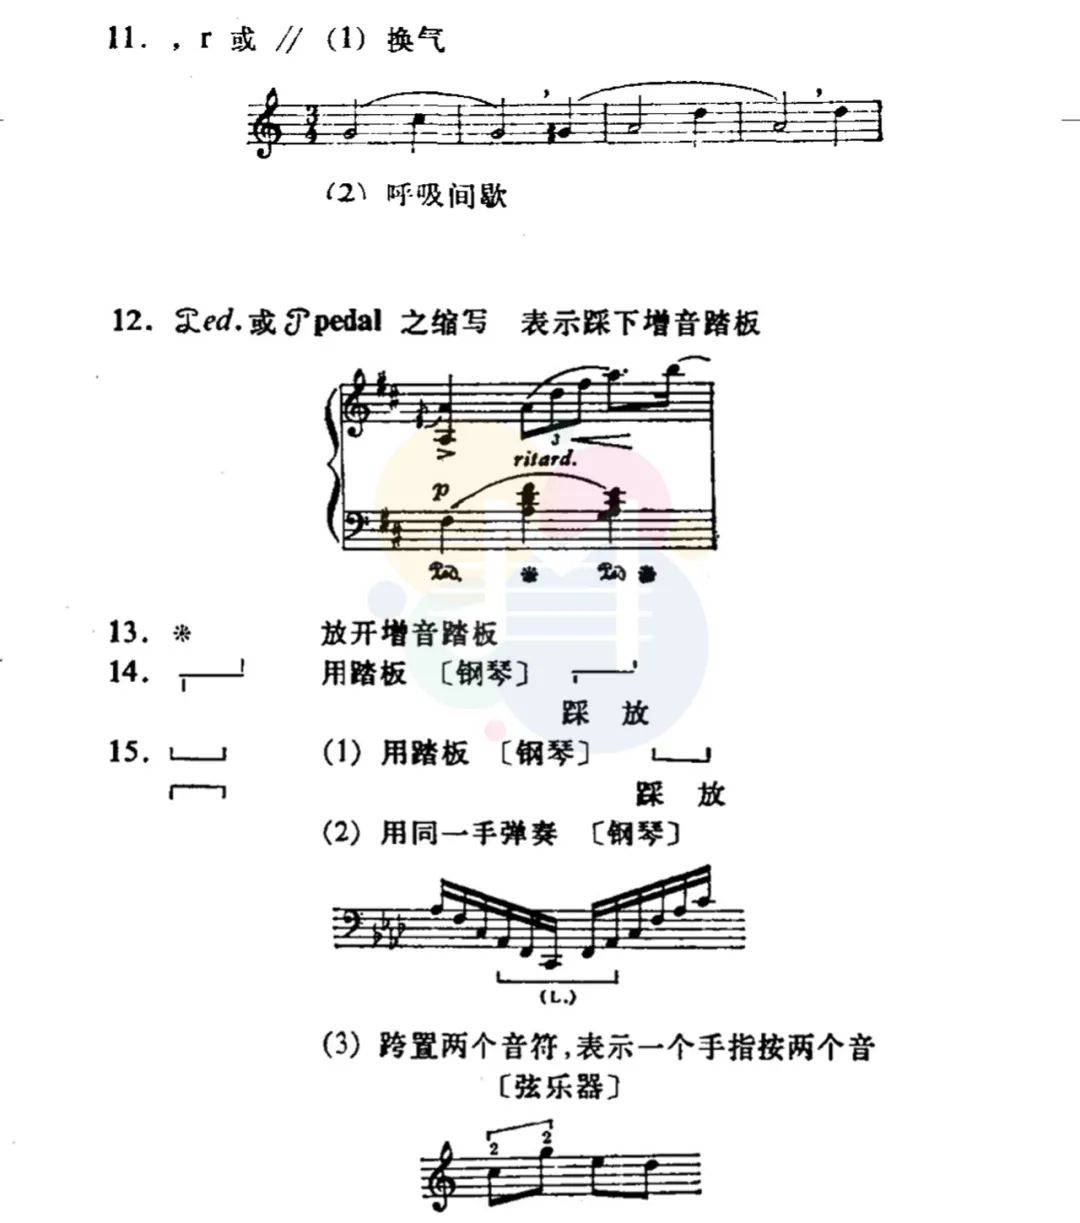 具体解读钢琴谱上的特殊符号(钢琴谱中所有术语记号)